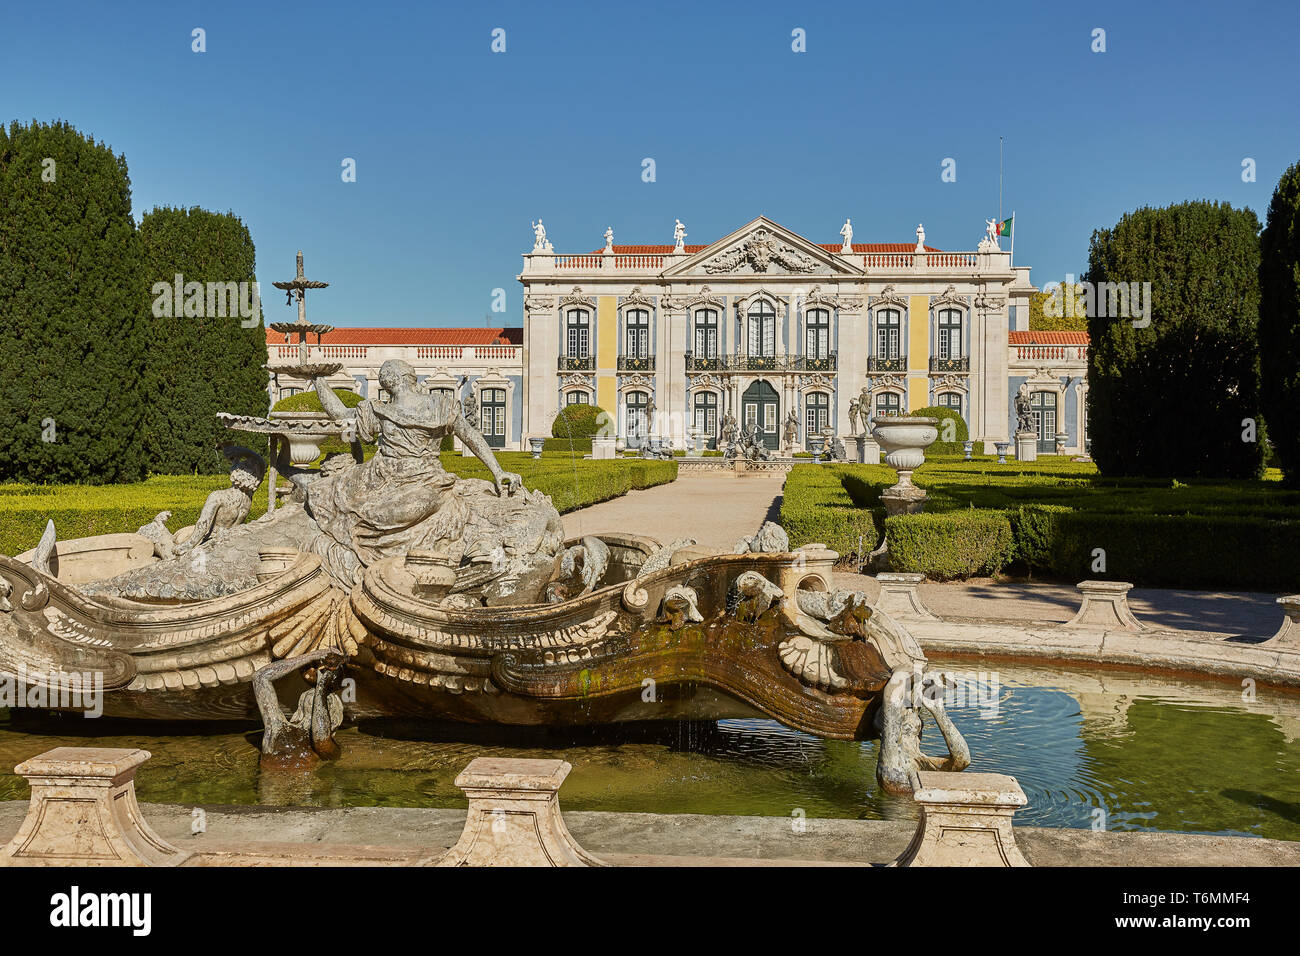 QUELUZ, Sintra/PORTUGAL - Oktober 02, 2017: Fassade, Brunnen und Gärten von Queluz Palast in Sintra, Portugal im Sommer Tag Stockfoto